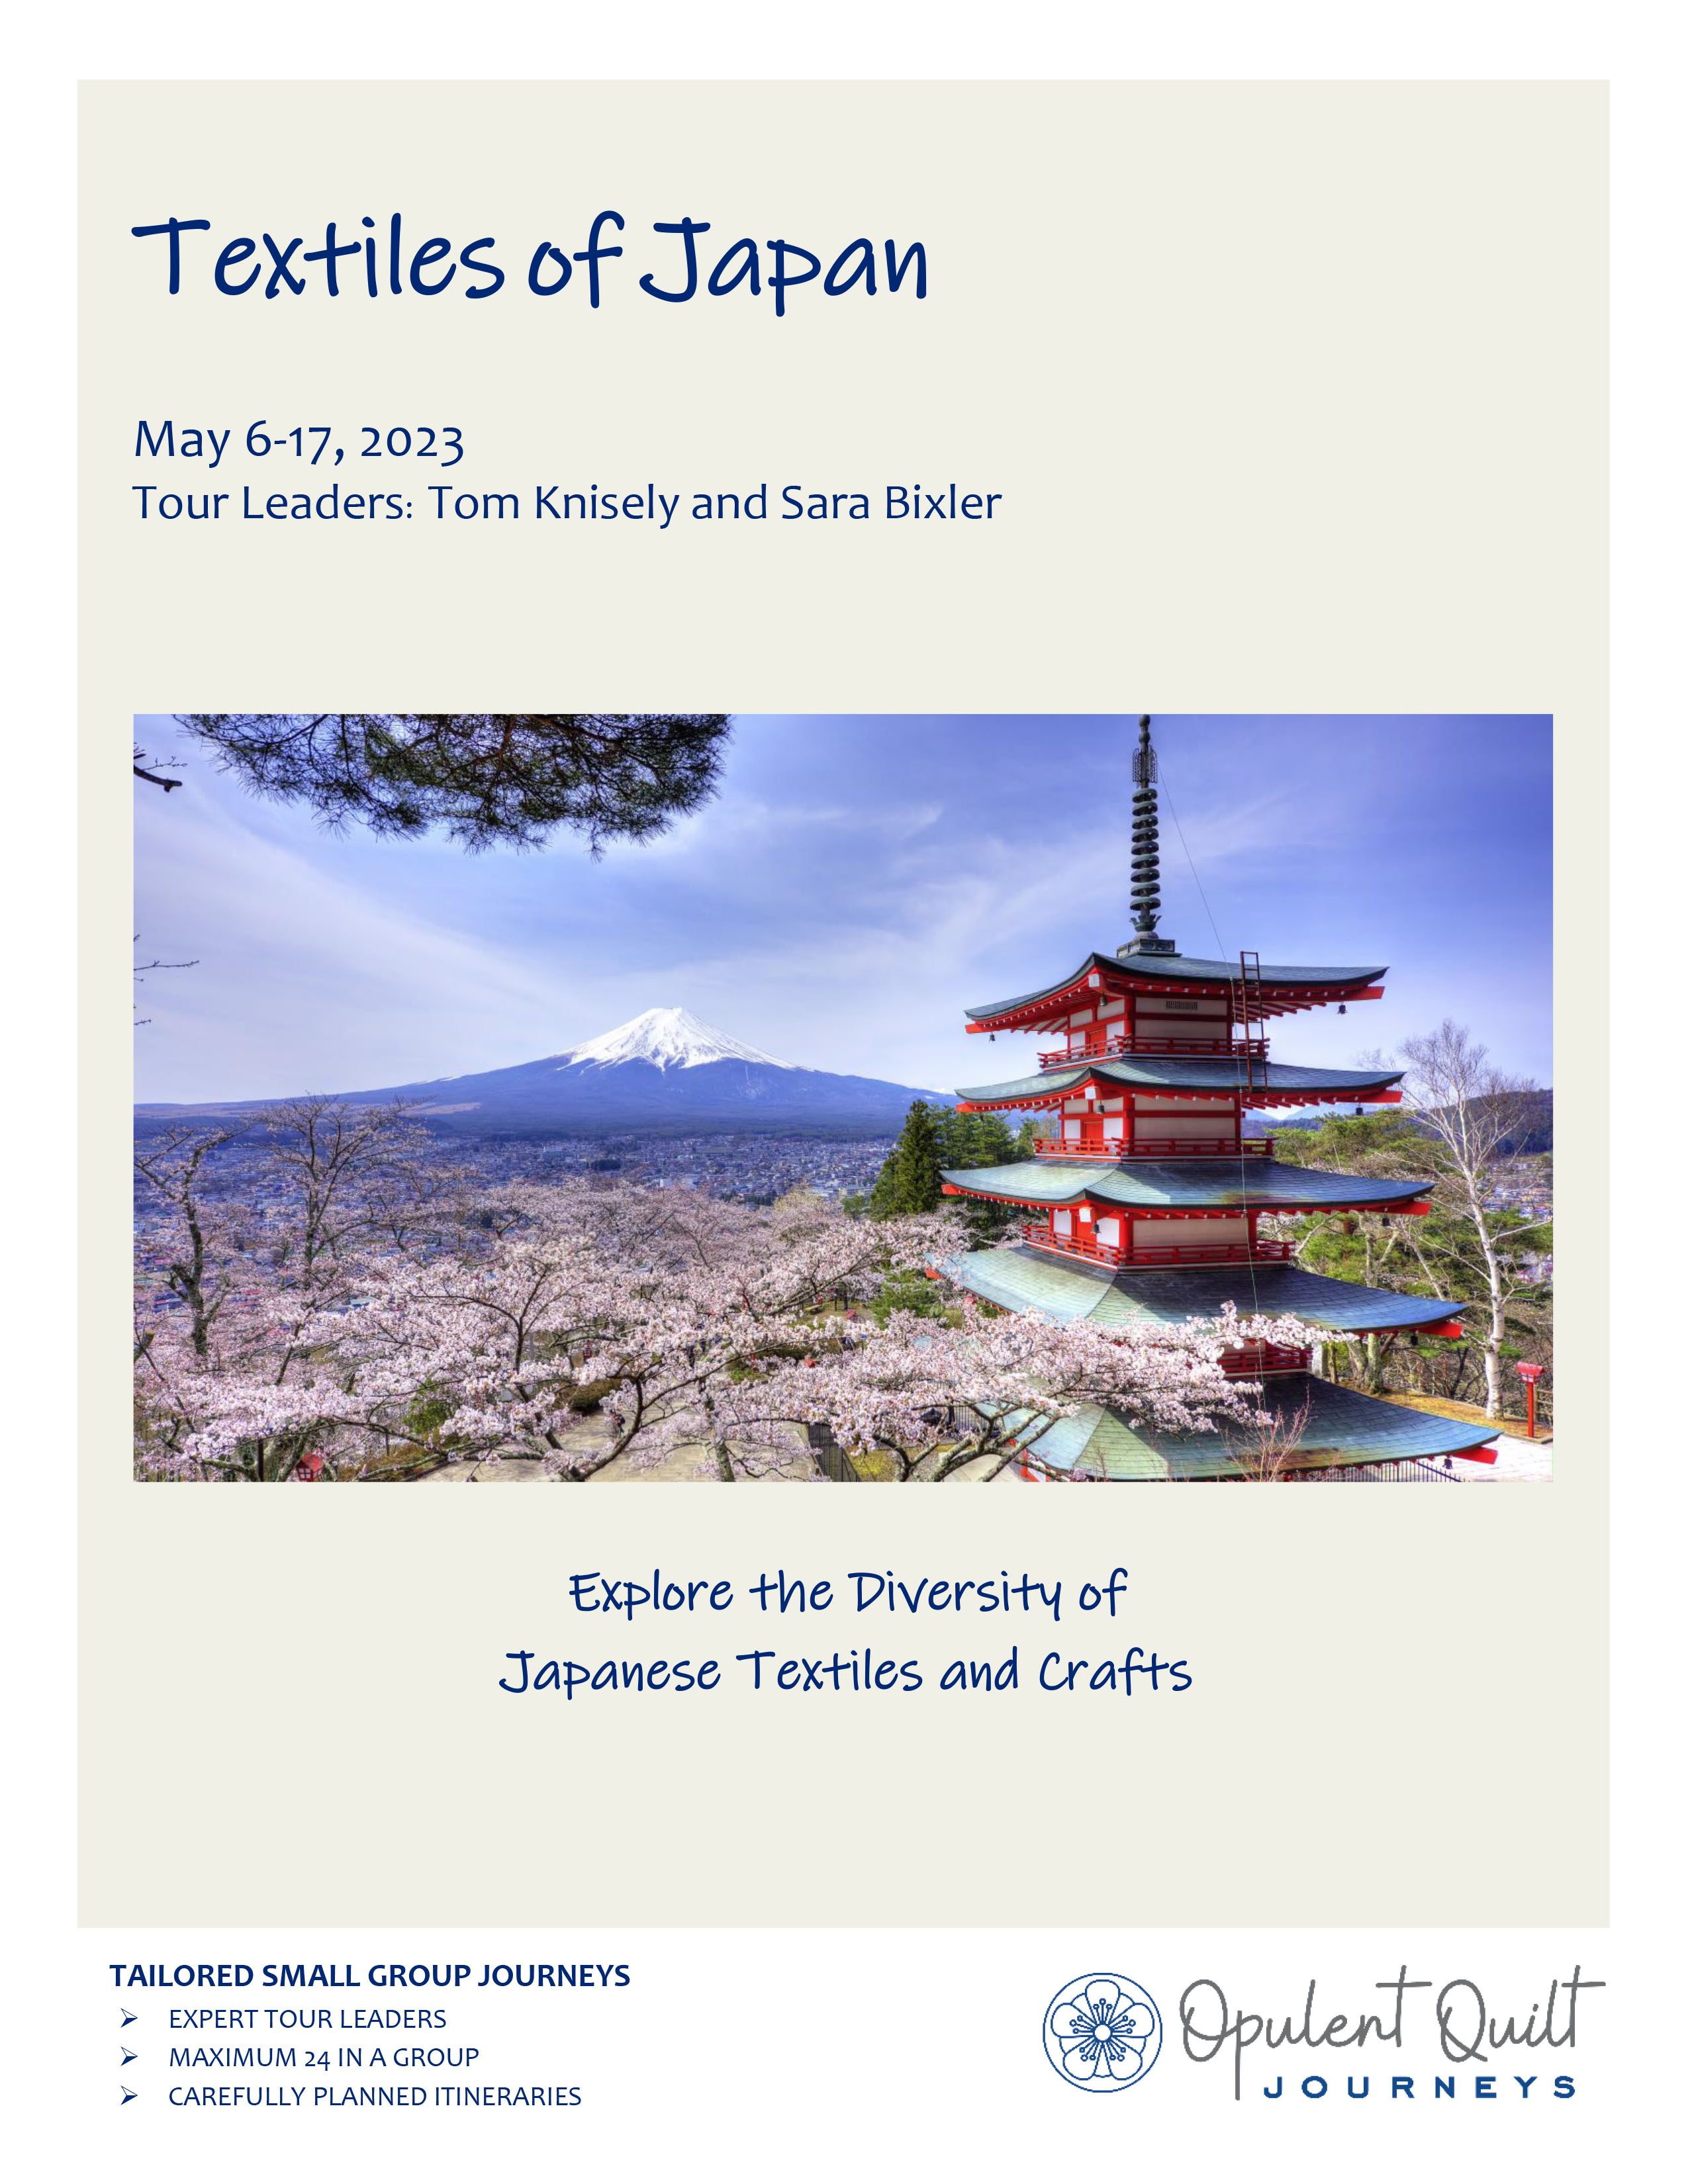 Tour brochure-Textiles of Japan